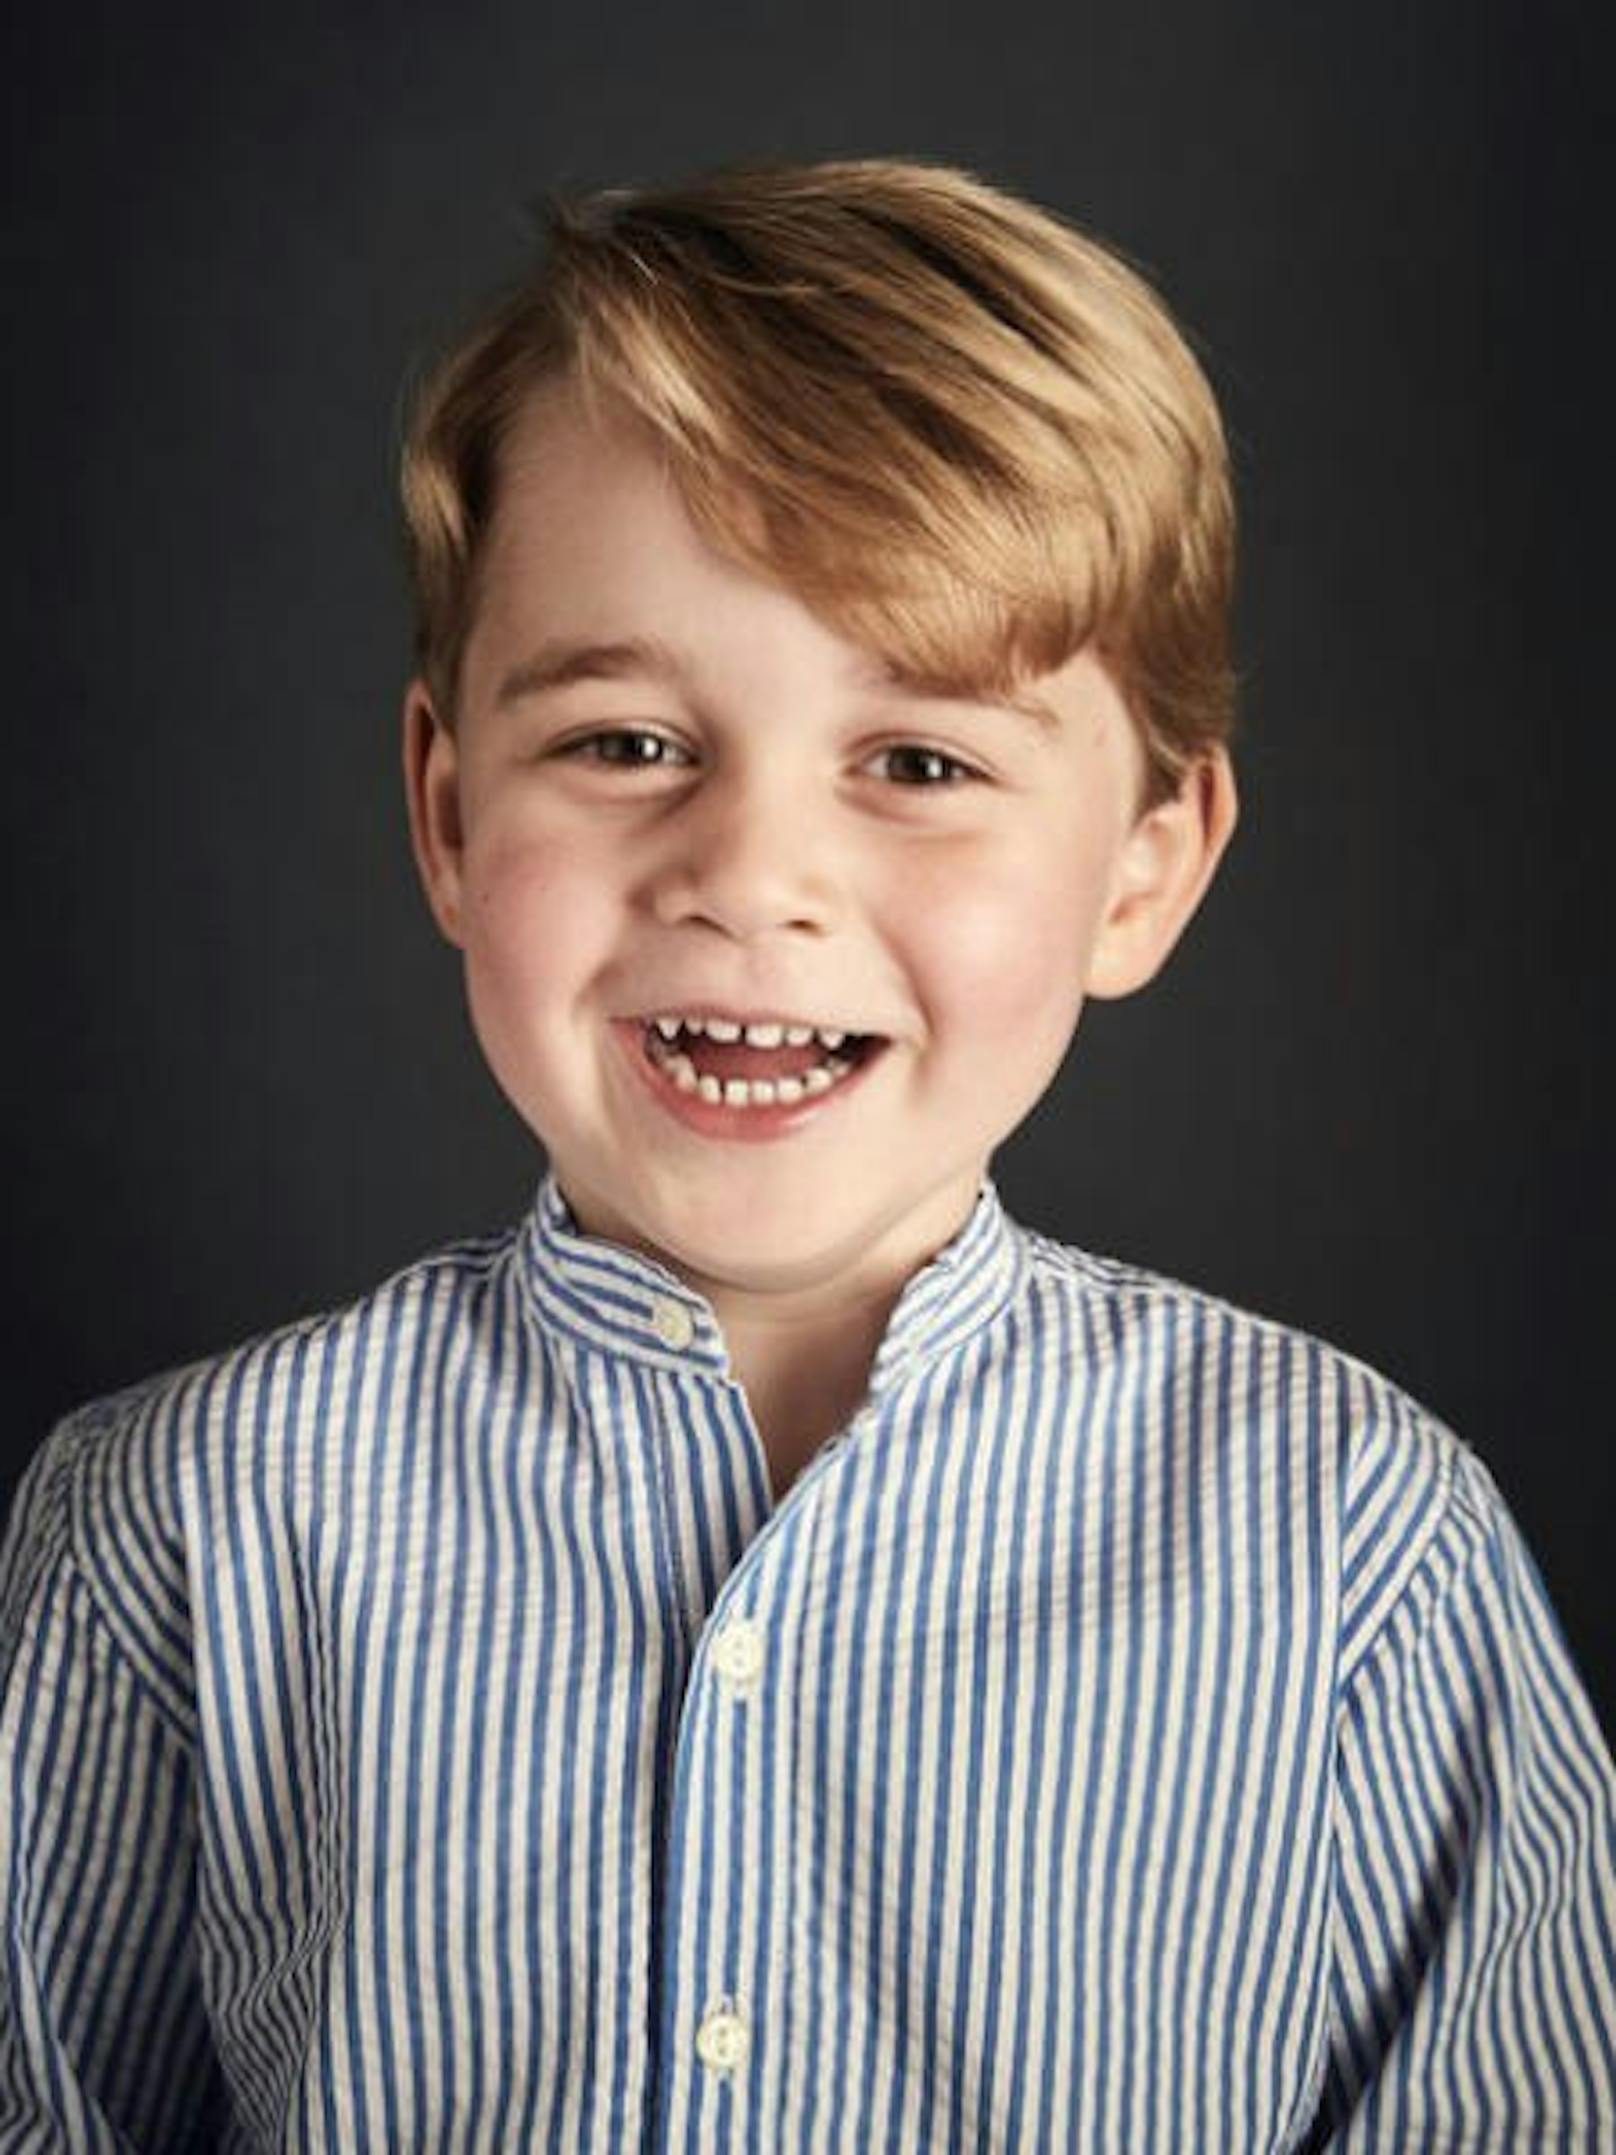 22.07.2017: Prinz George feiert am 22. Juli Geburtstag. Der Kensington Palace hat aus diesem Grund ein neues, offizielles Porträt des Thronfolgers veröffentlicht. Auf dem lächelt der nun Vierjährige frech in die Kamera.